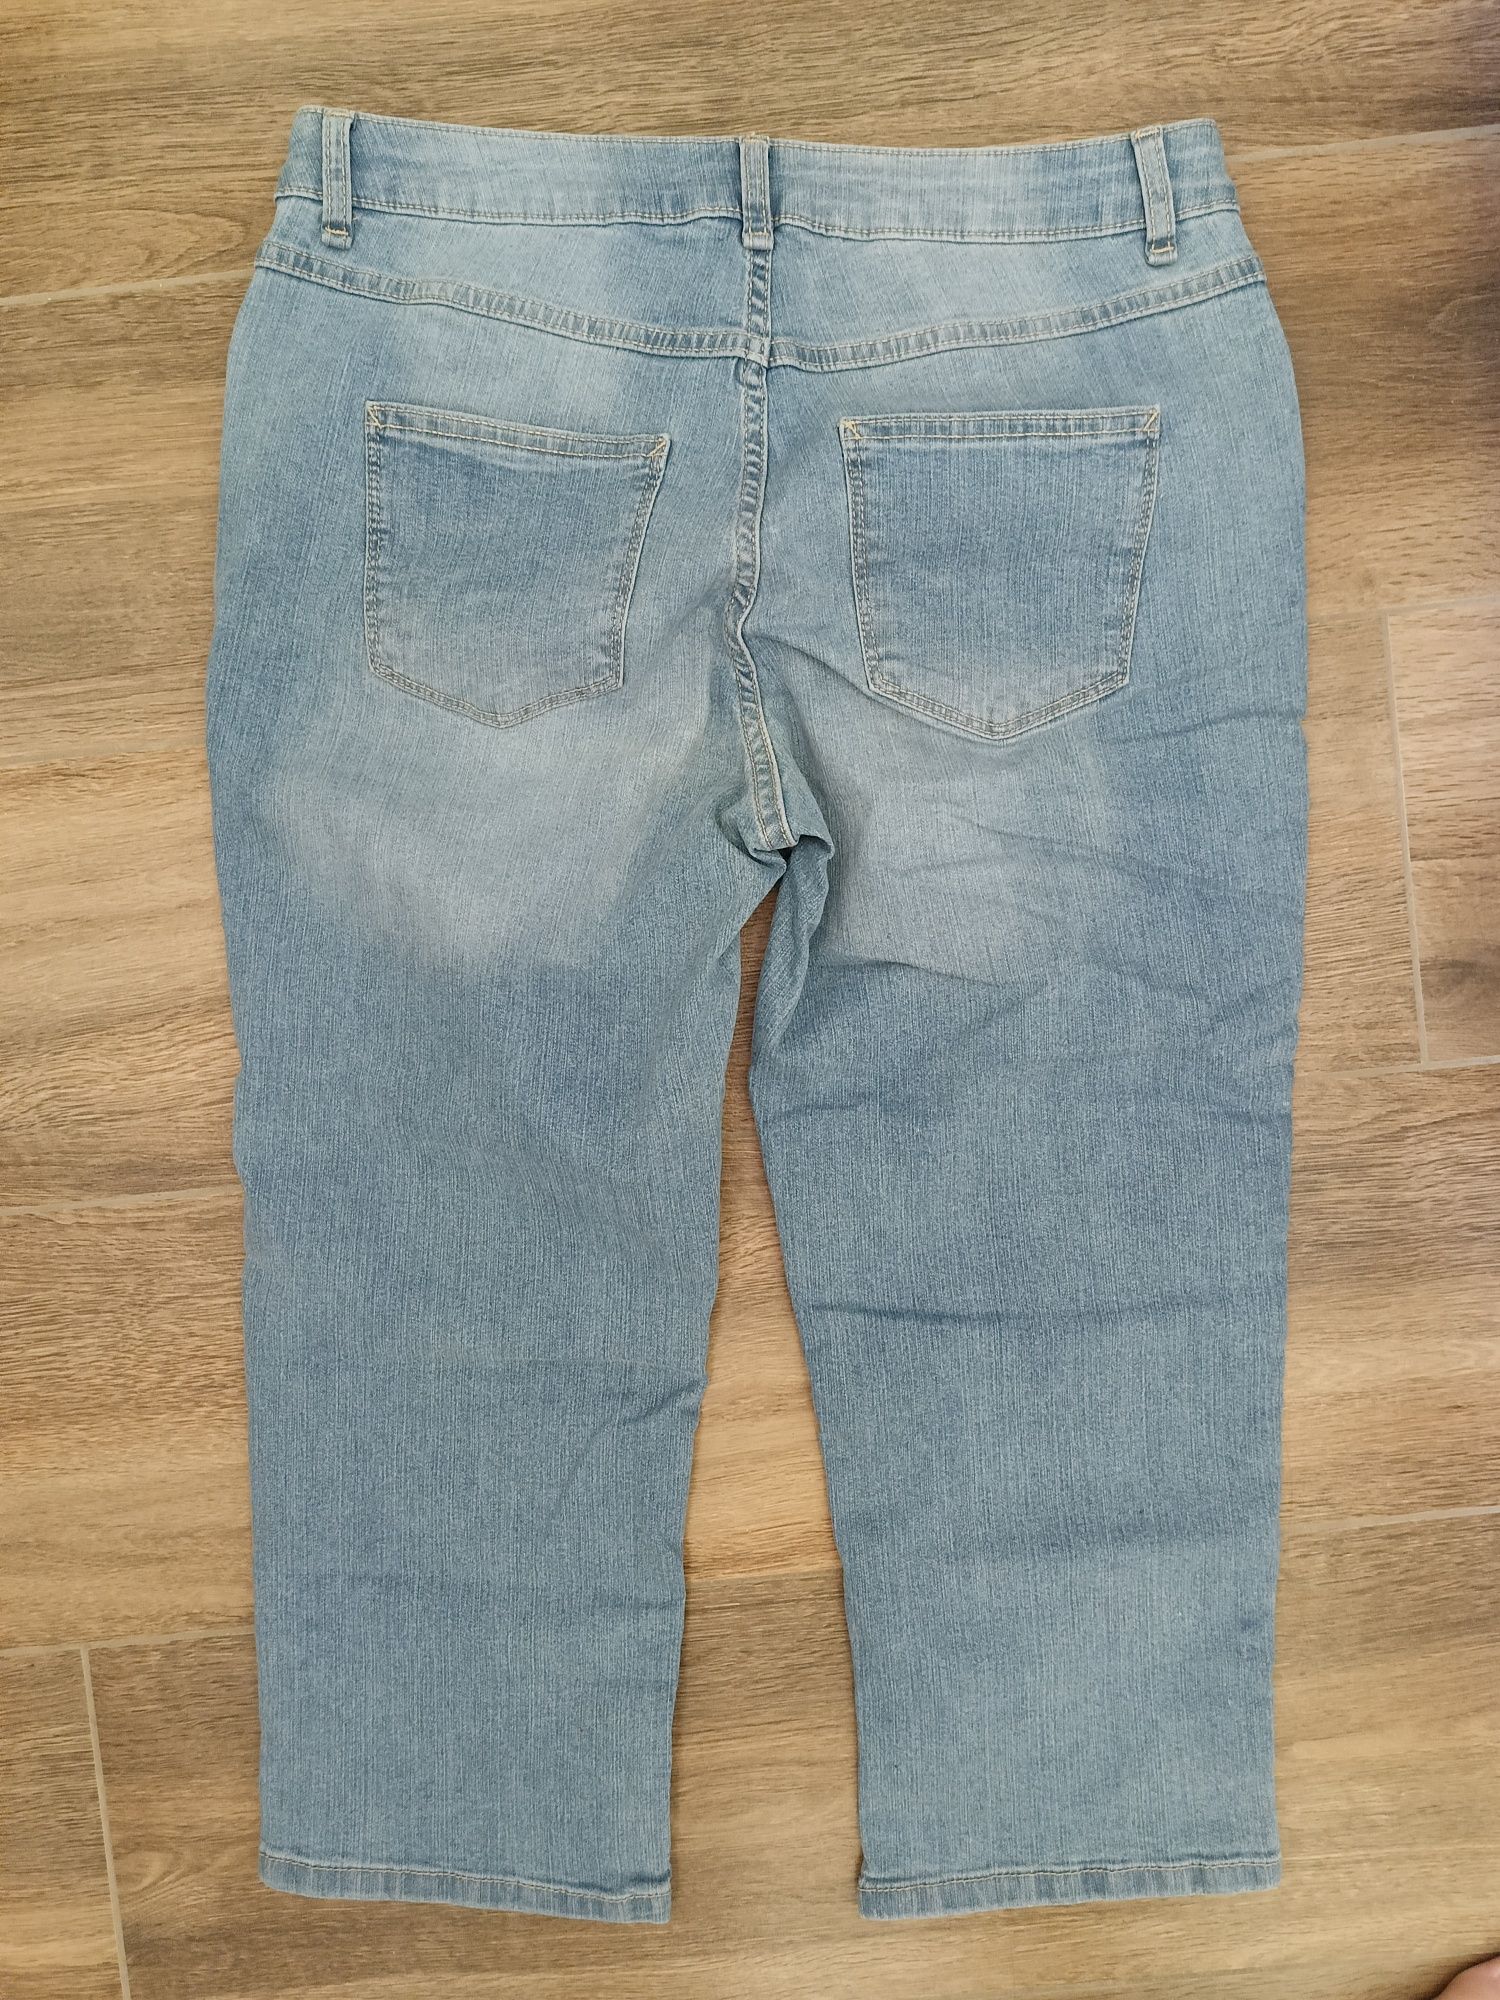 Spodnie jeansowe Capri C&A 40, rybaczki